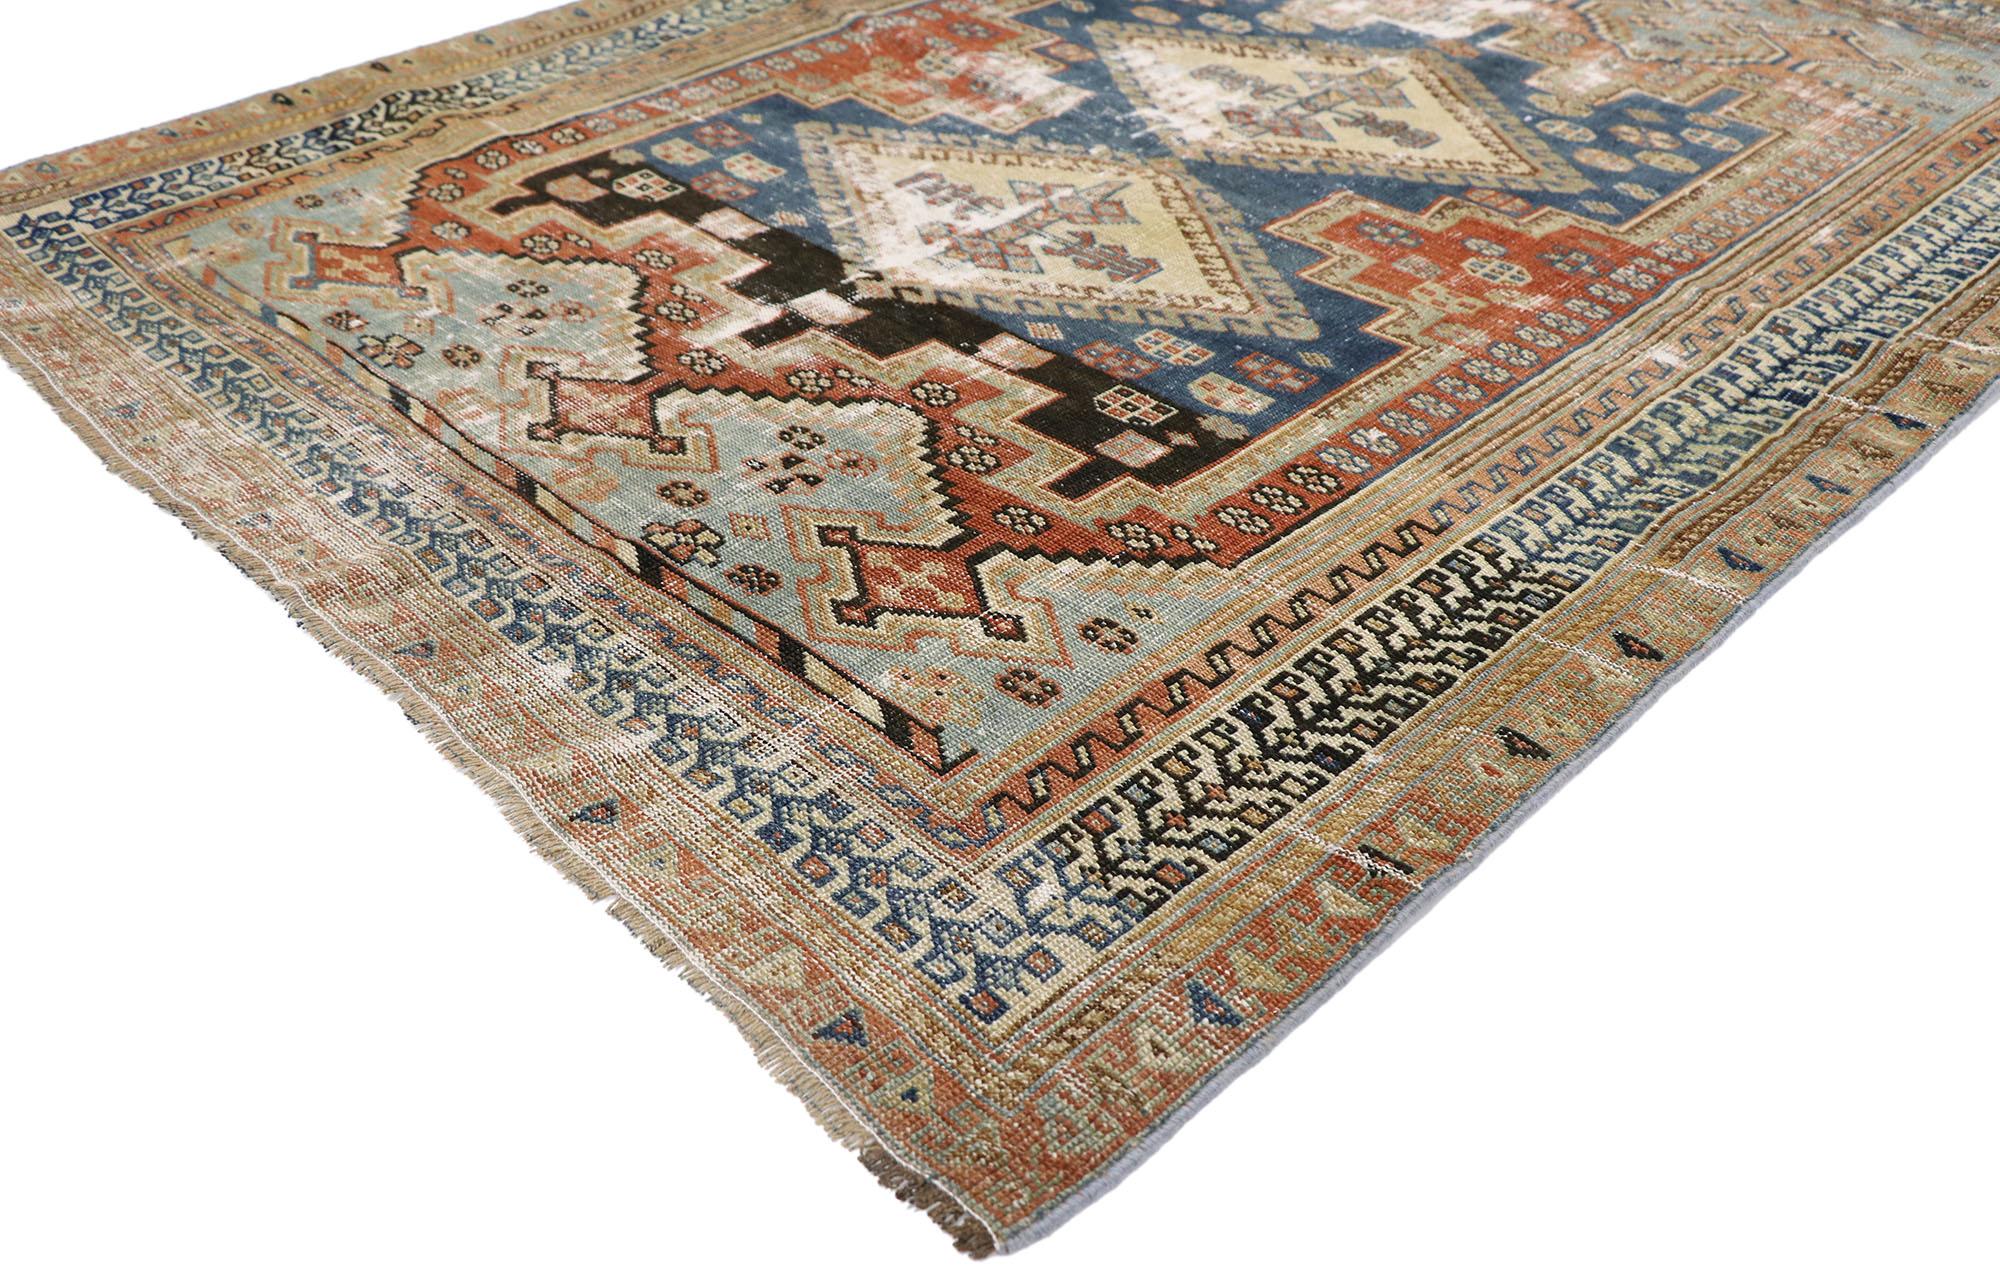 60897, gealterter, antiker persischer Shiraz-Teppich im modernen, rustikalen Tribal-Stil. Dieser handgeknüpfte, antike persische Shiraz-Teppich aus Wolle, der einen rustikalen Charme versprüht, verkörpert auf wunderbare Weise einen modernen